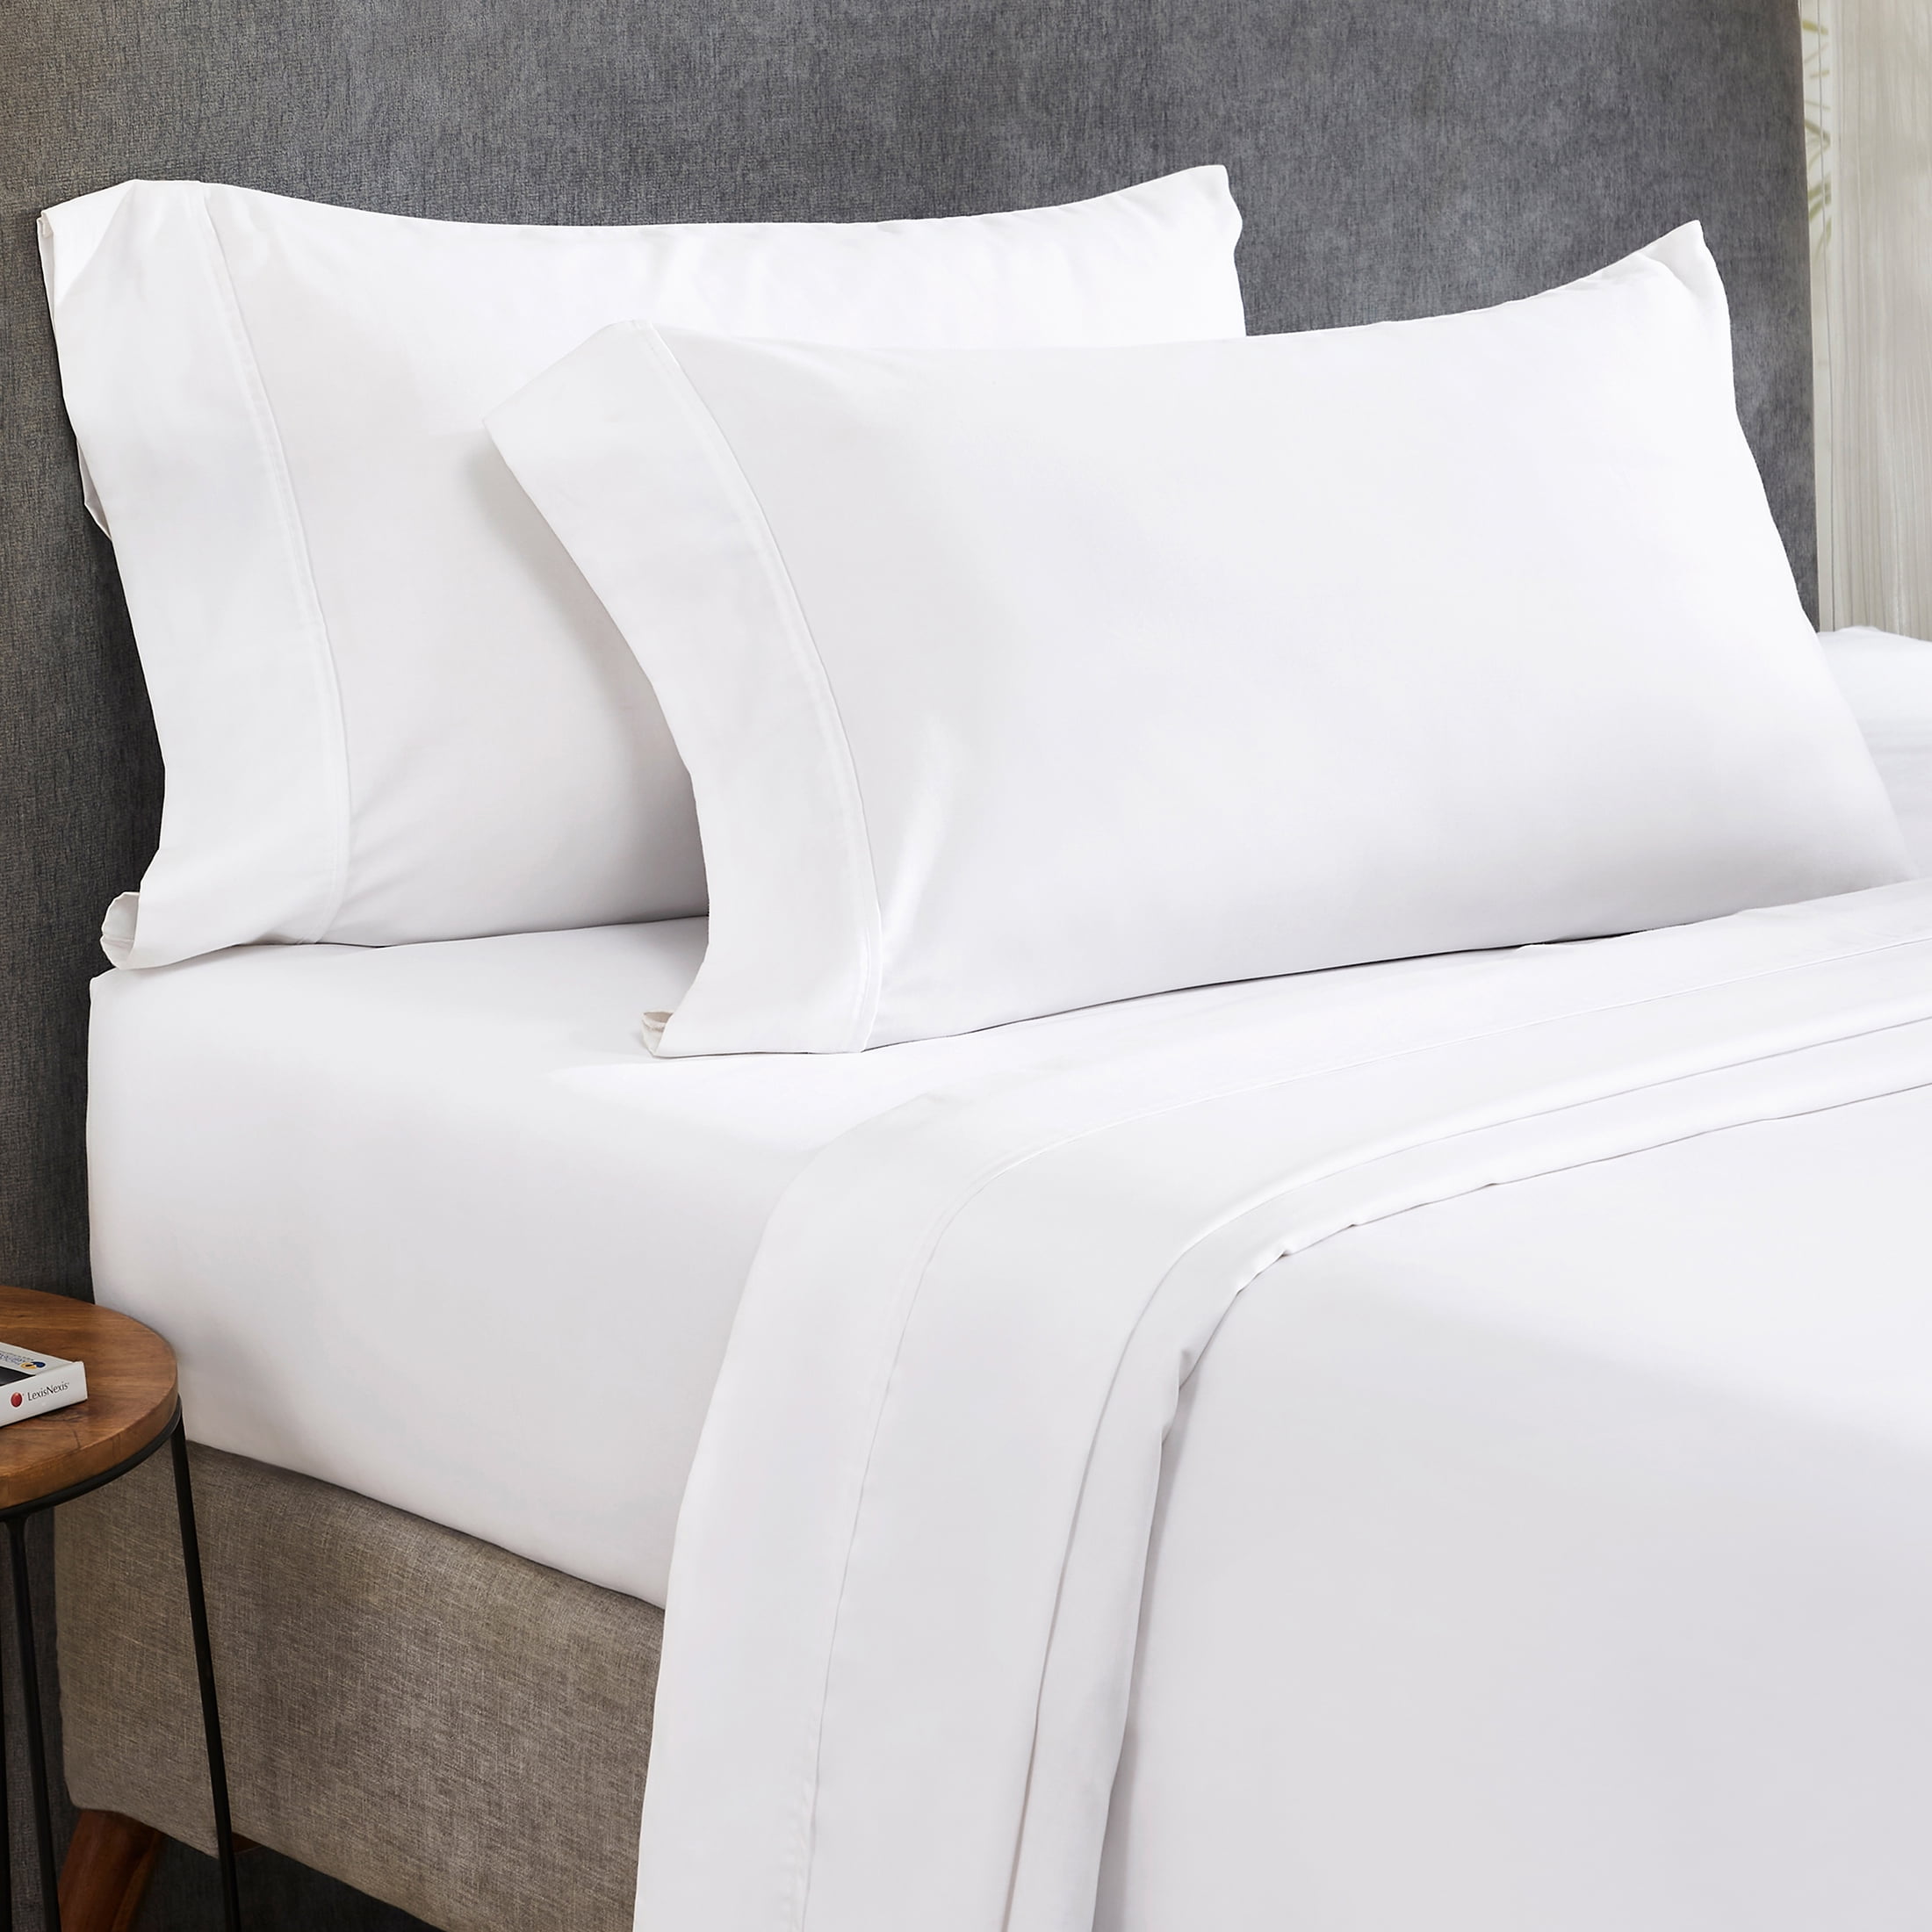 Details about   Sheet Set Queen Size 400 TC Cotton 4 PCs Light Blue Pillow Bed Sheet Deep Fitted 